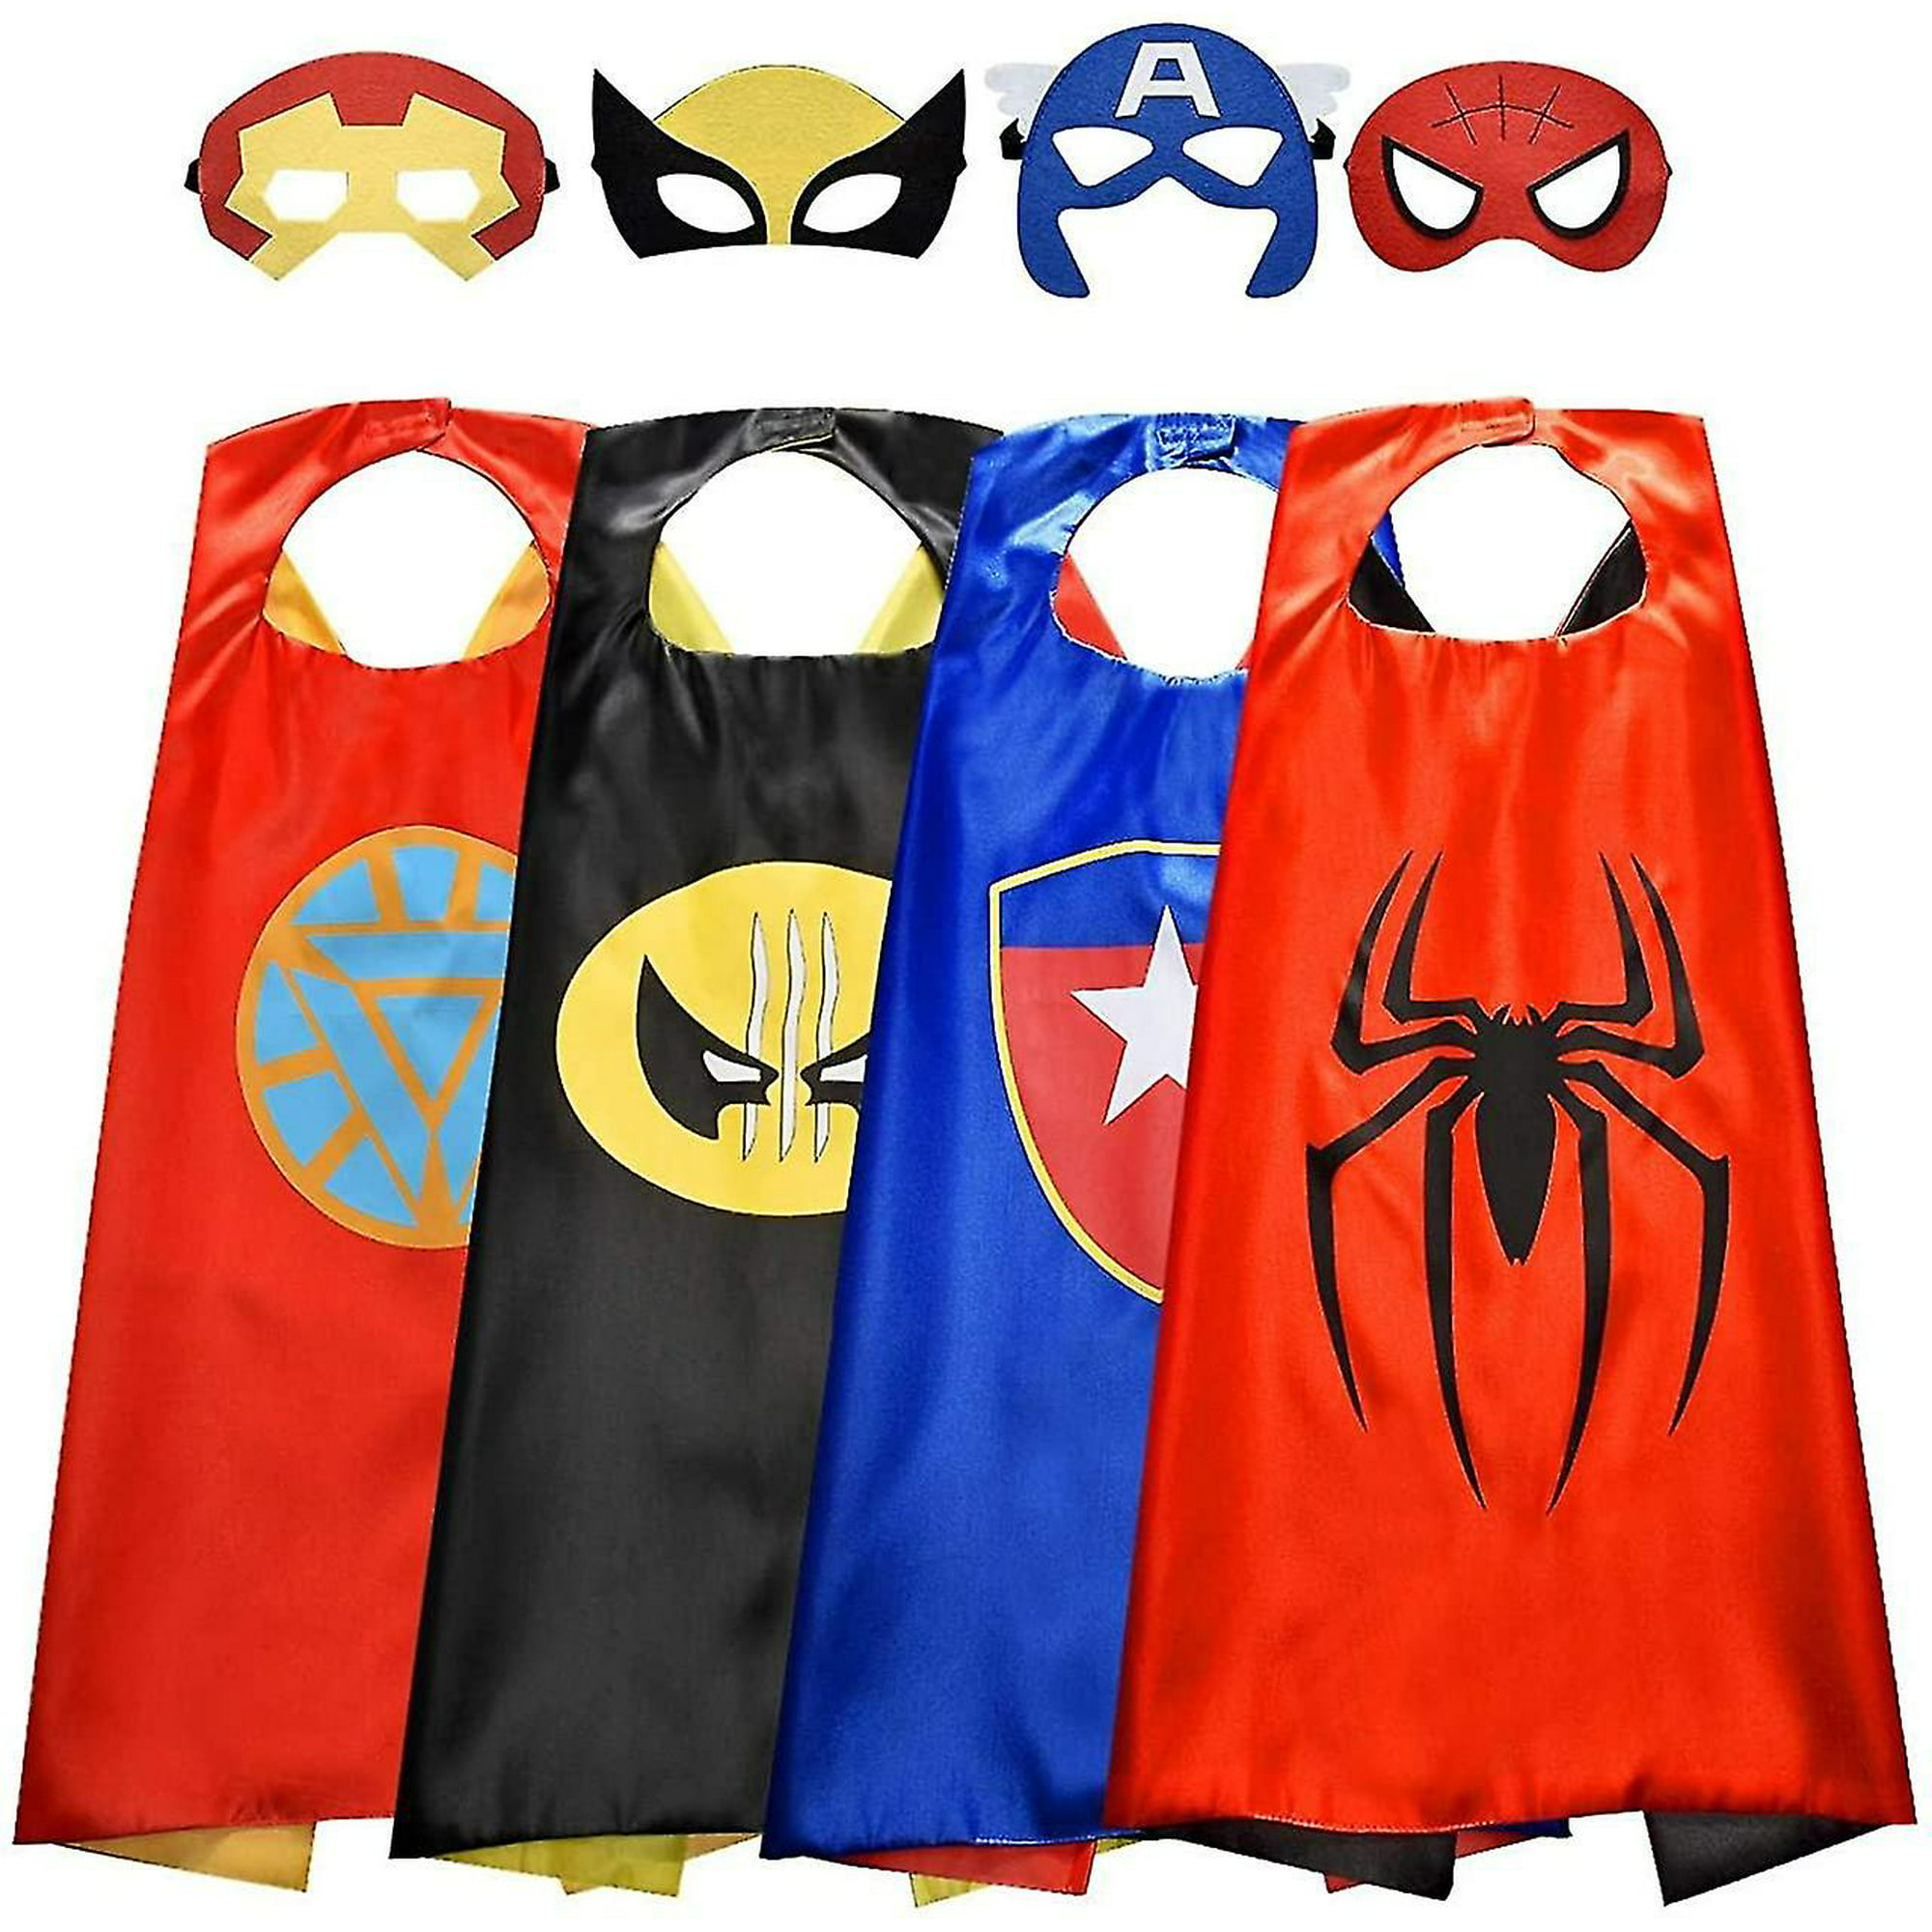 RioRand Capas y máscaras de superhéroe para niños, disfraces de superhéroe,  juguetes para niños de 3 a 10 años, suministros de fiesta, regalos de